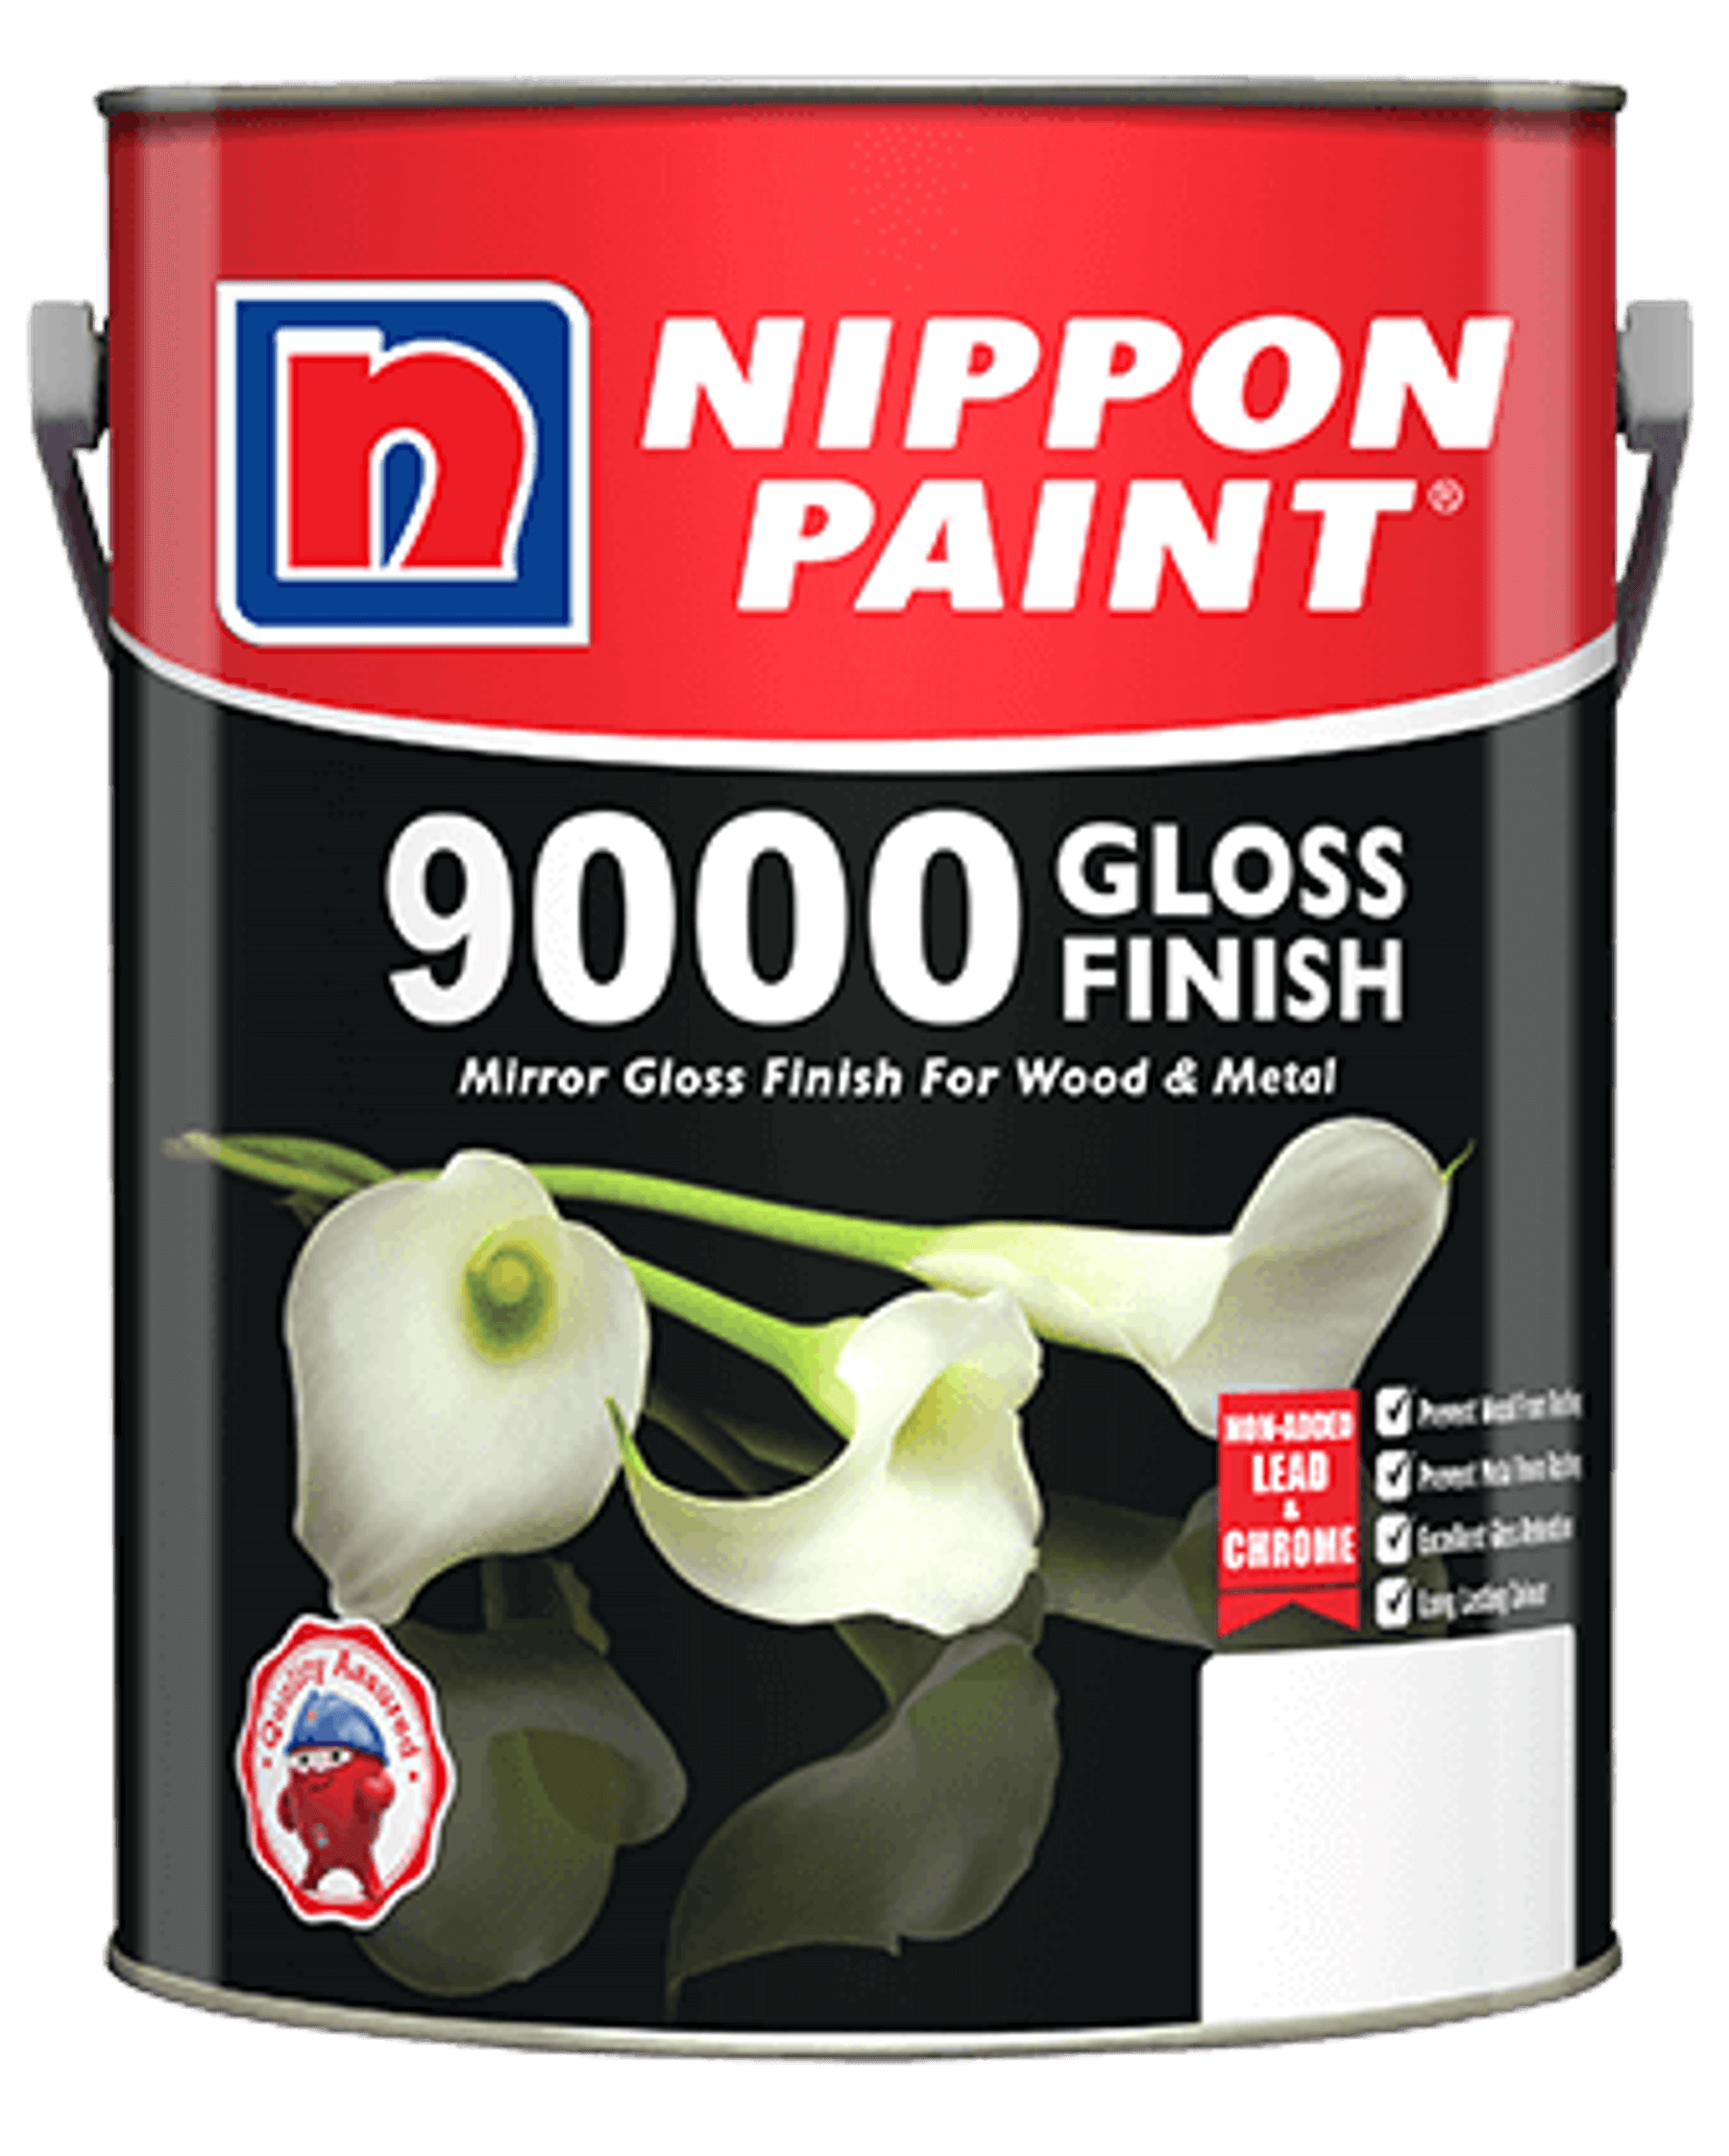 9000 Gloss Finish